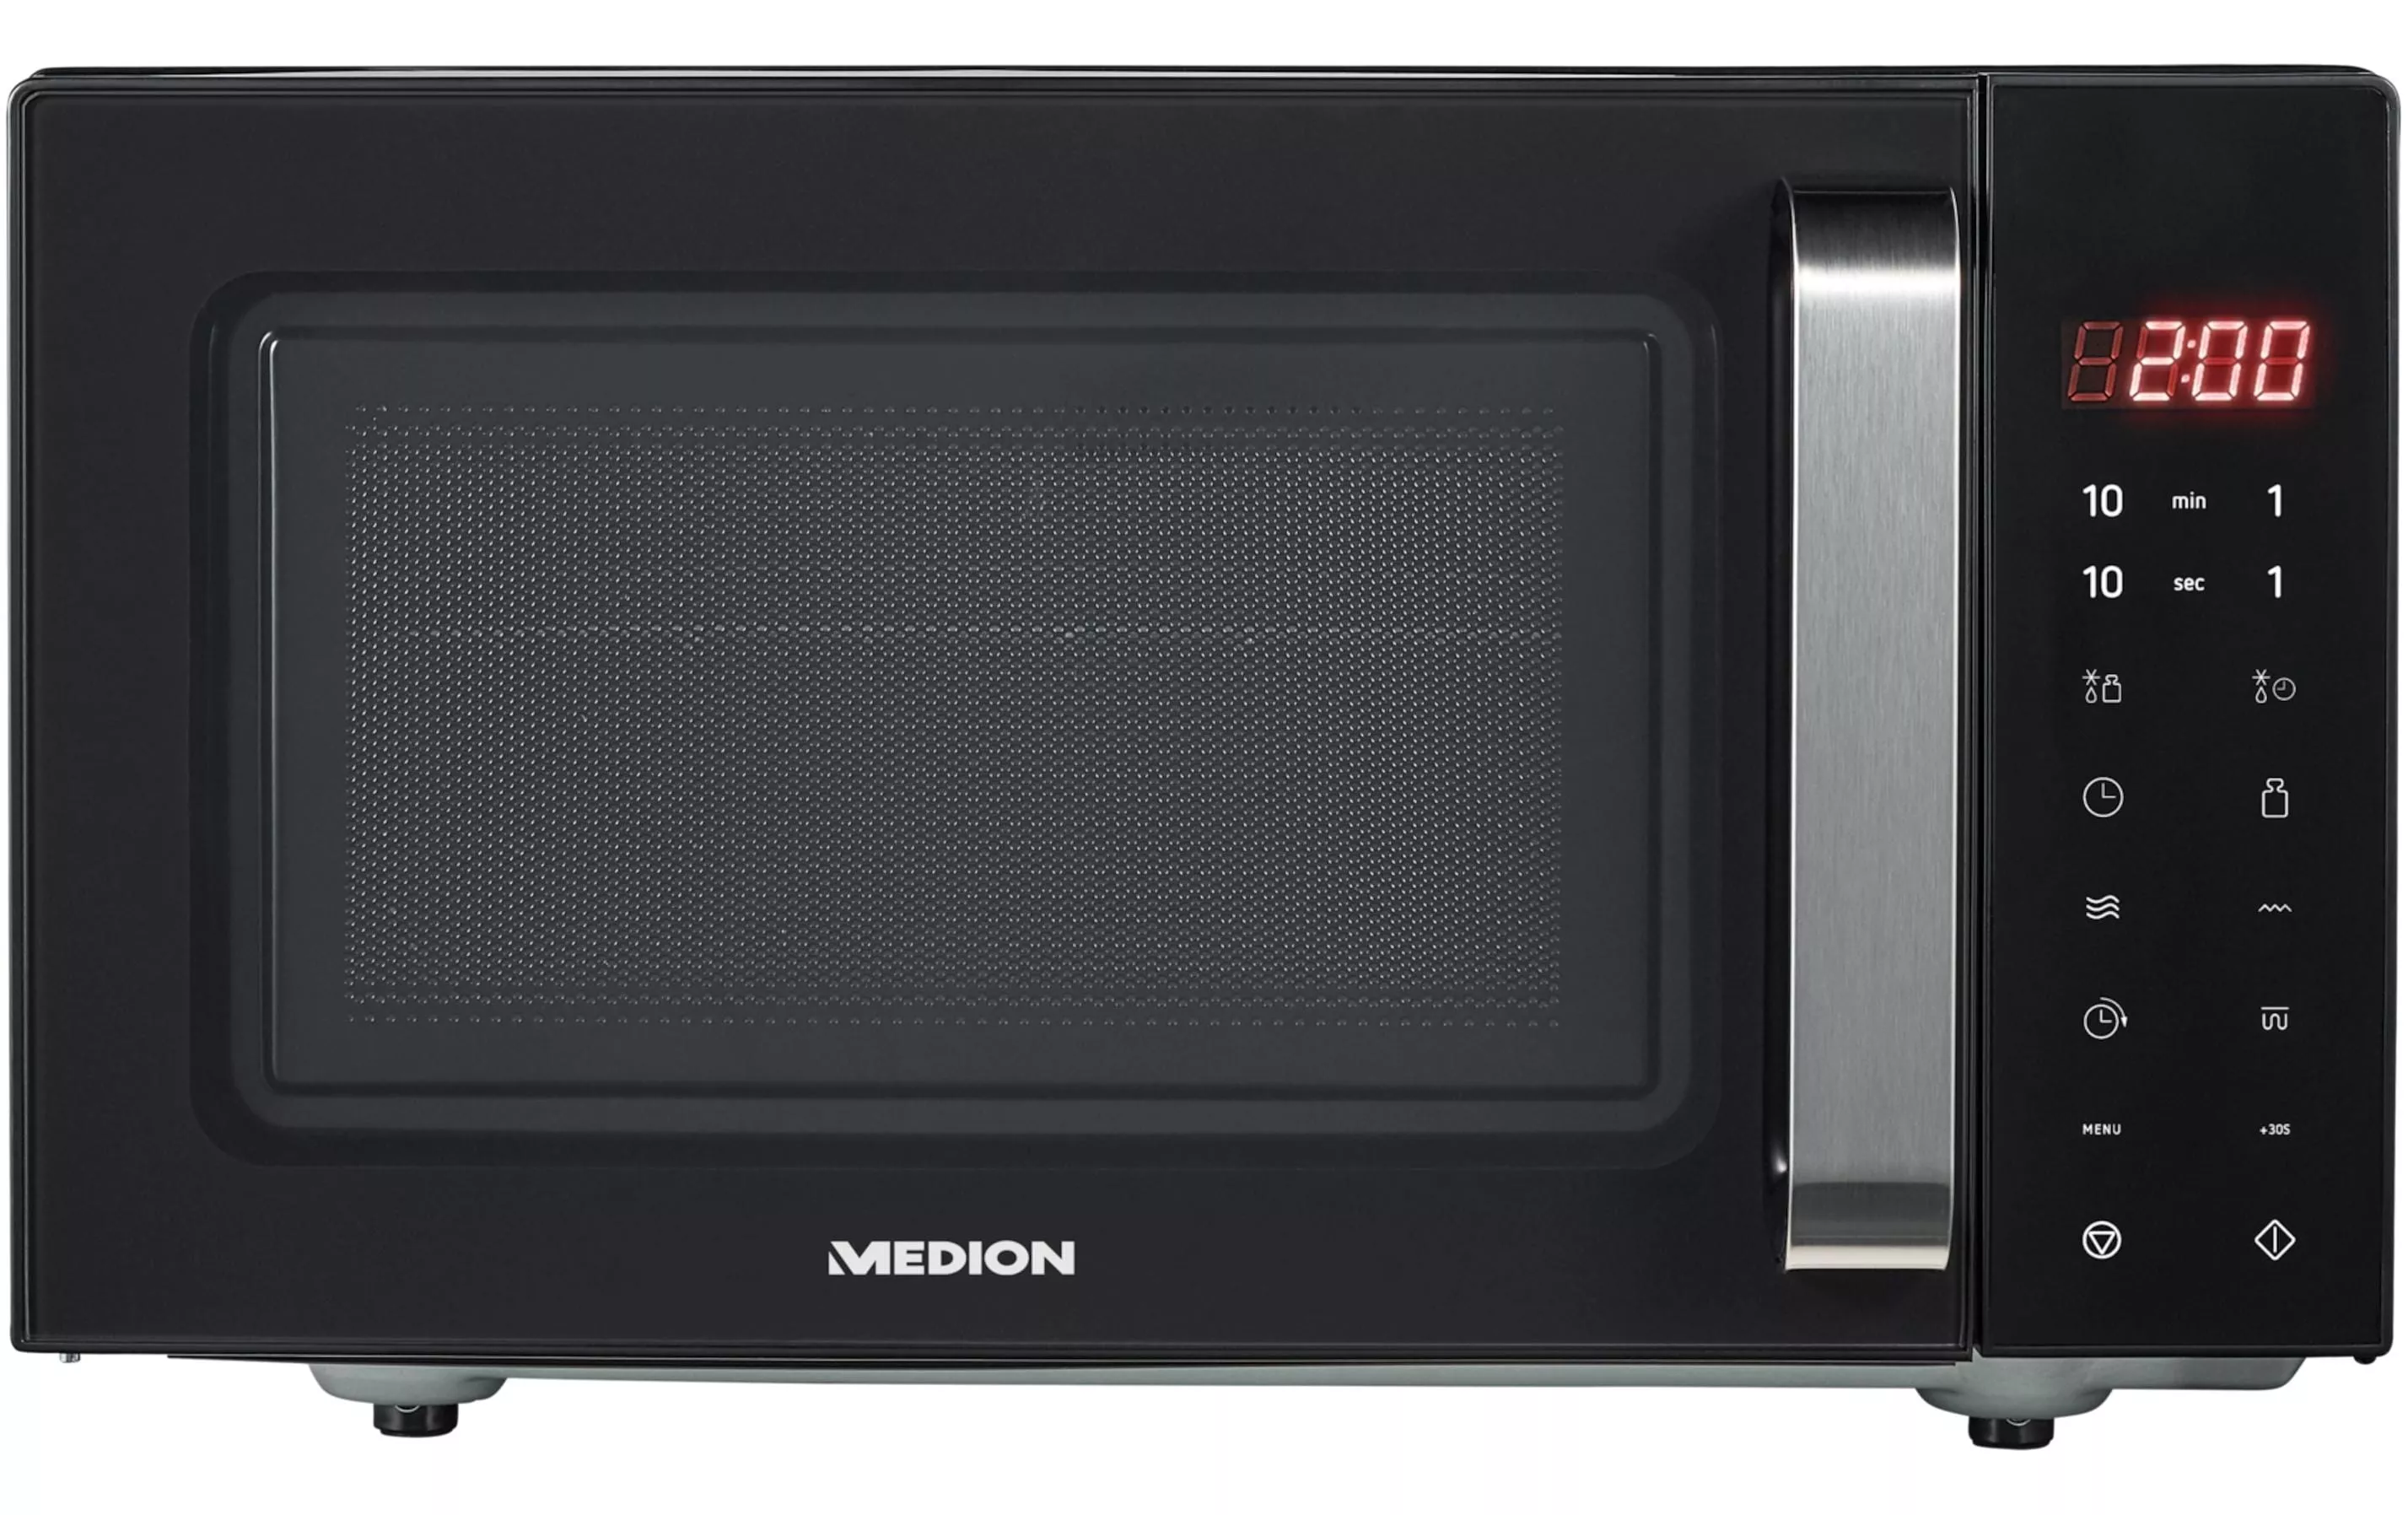 Microonde Medion con grill MD 10755 nero